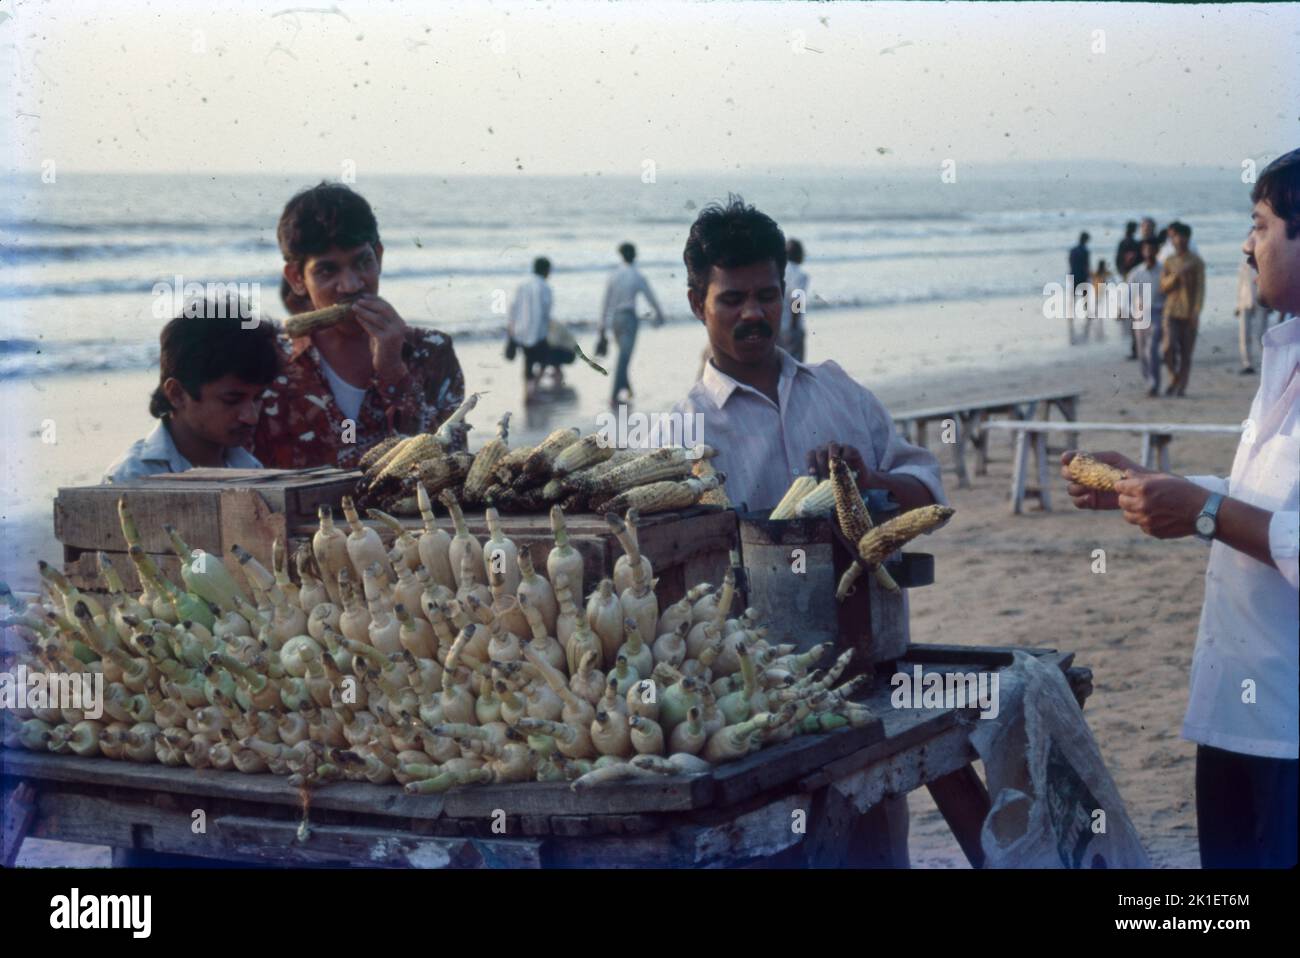 Corn Seller, Juhu Beach, Mumbai Stock Photo